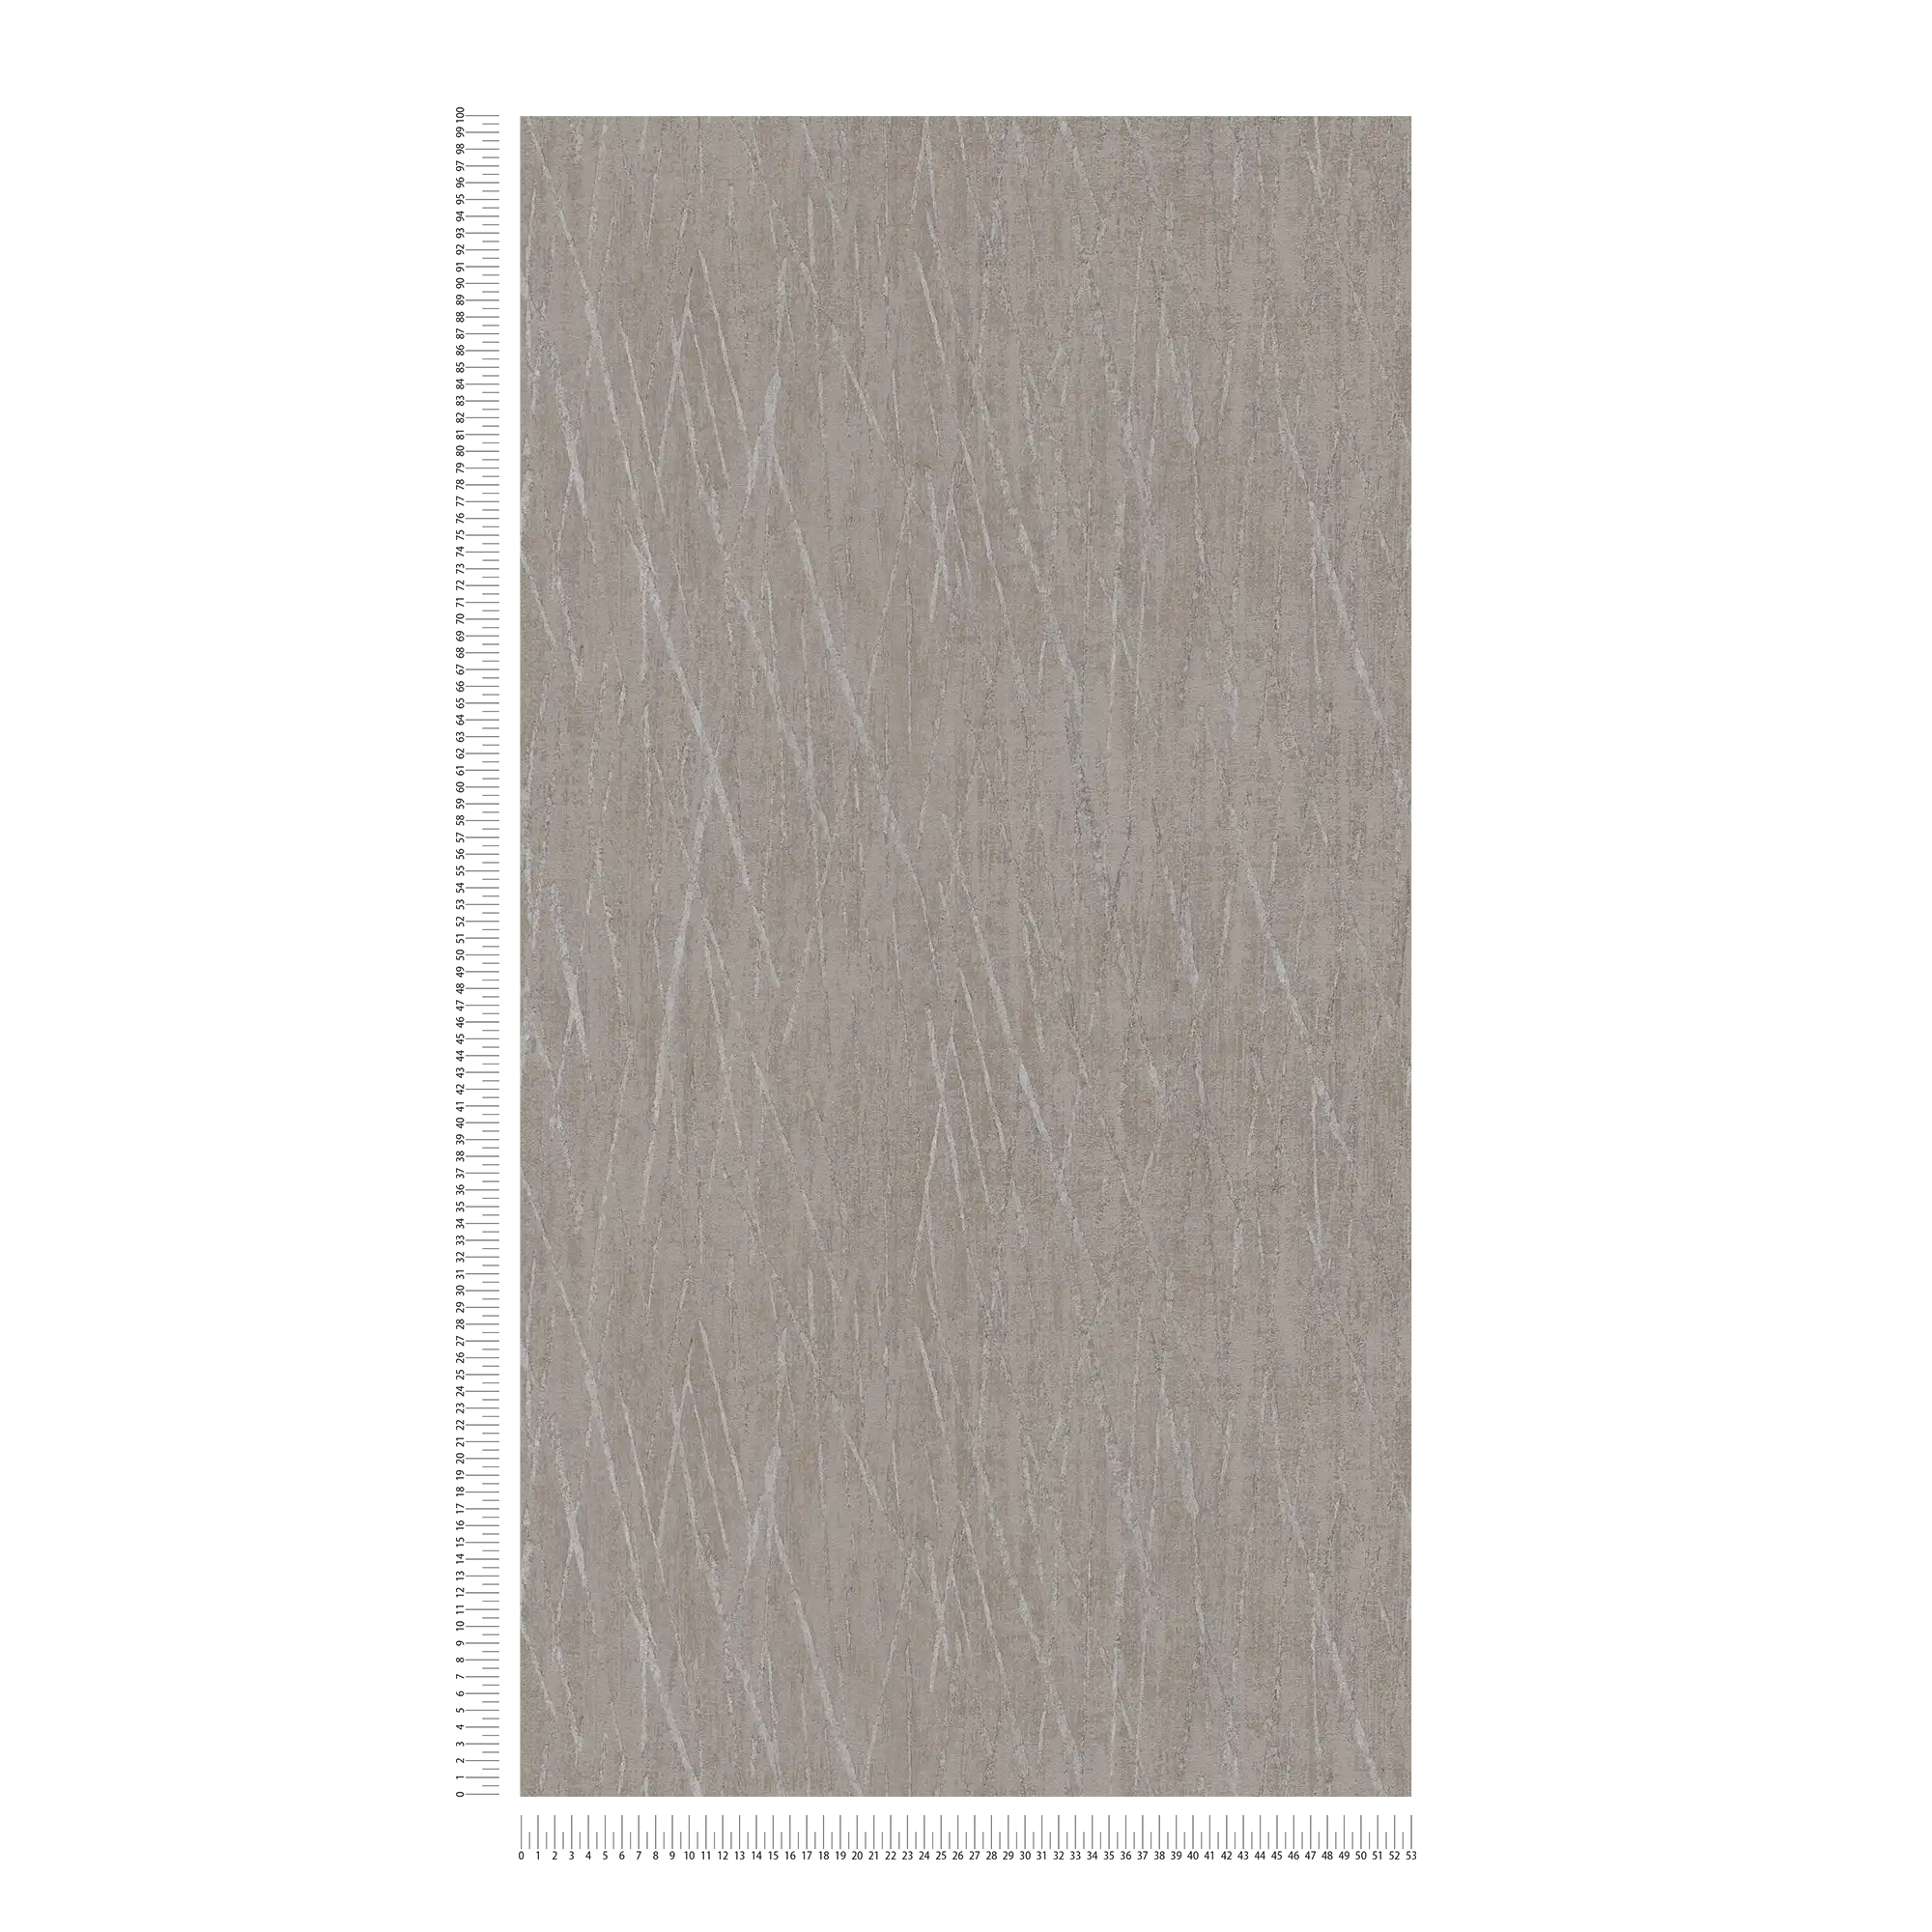             Carta da parati scandinava con design metallico - beige, grigio
        